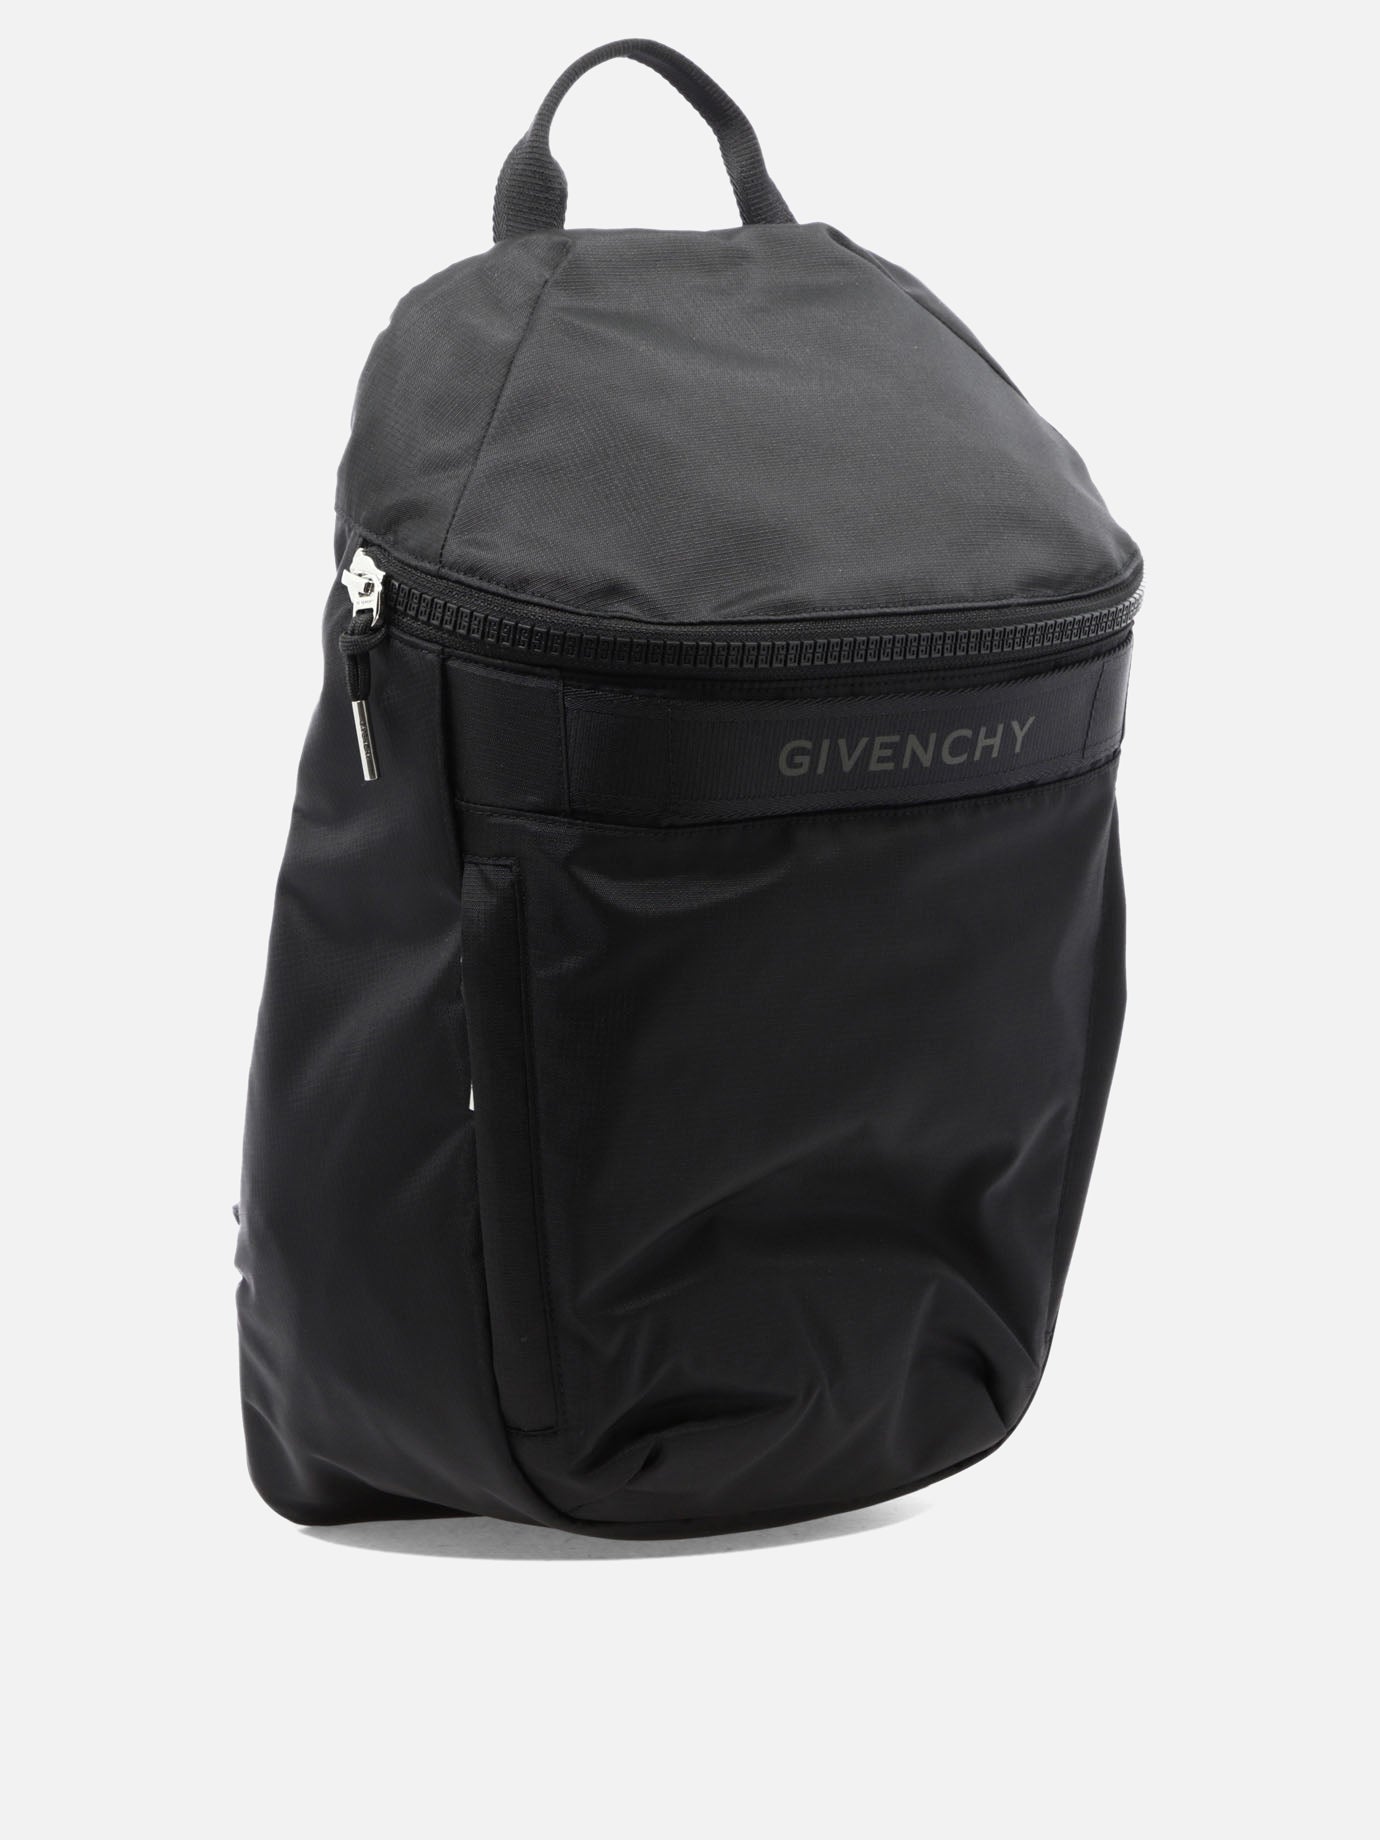 "G-Trek" backpack